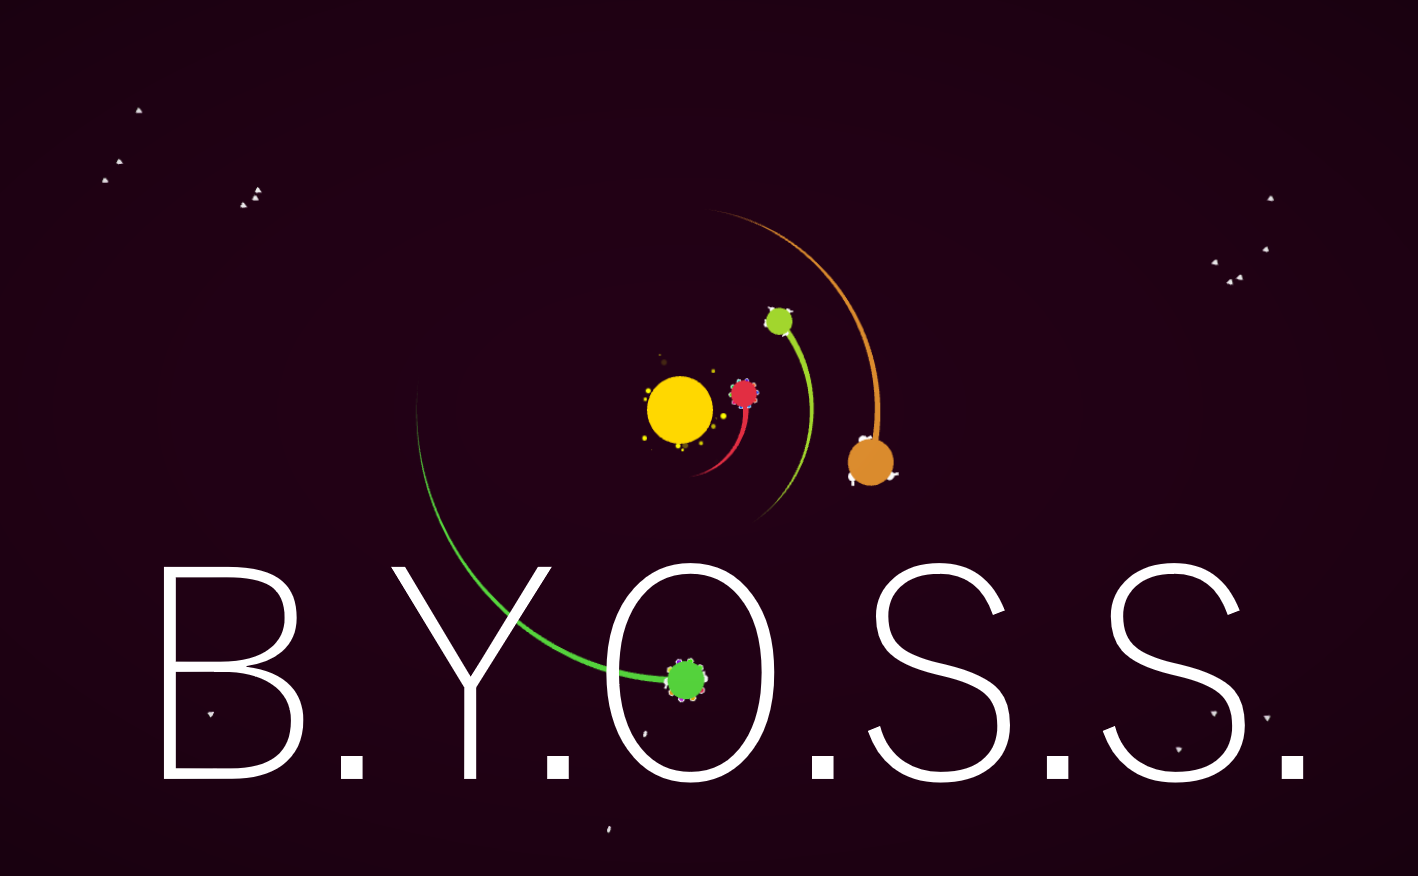 B.Y.O.S.S